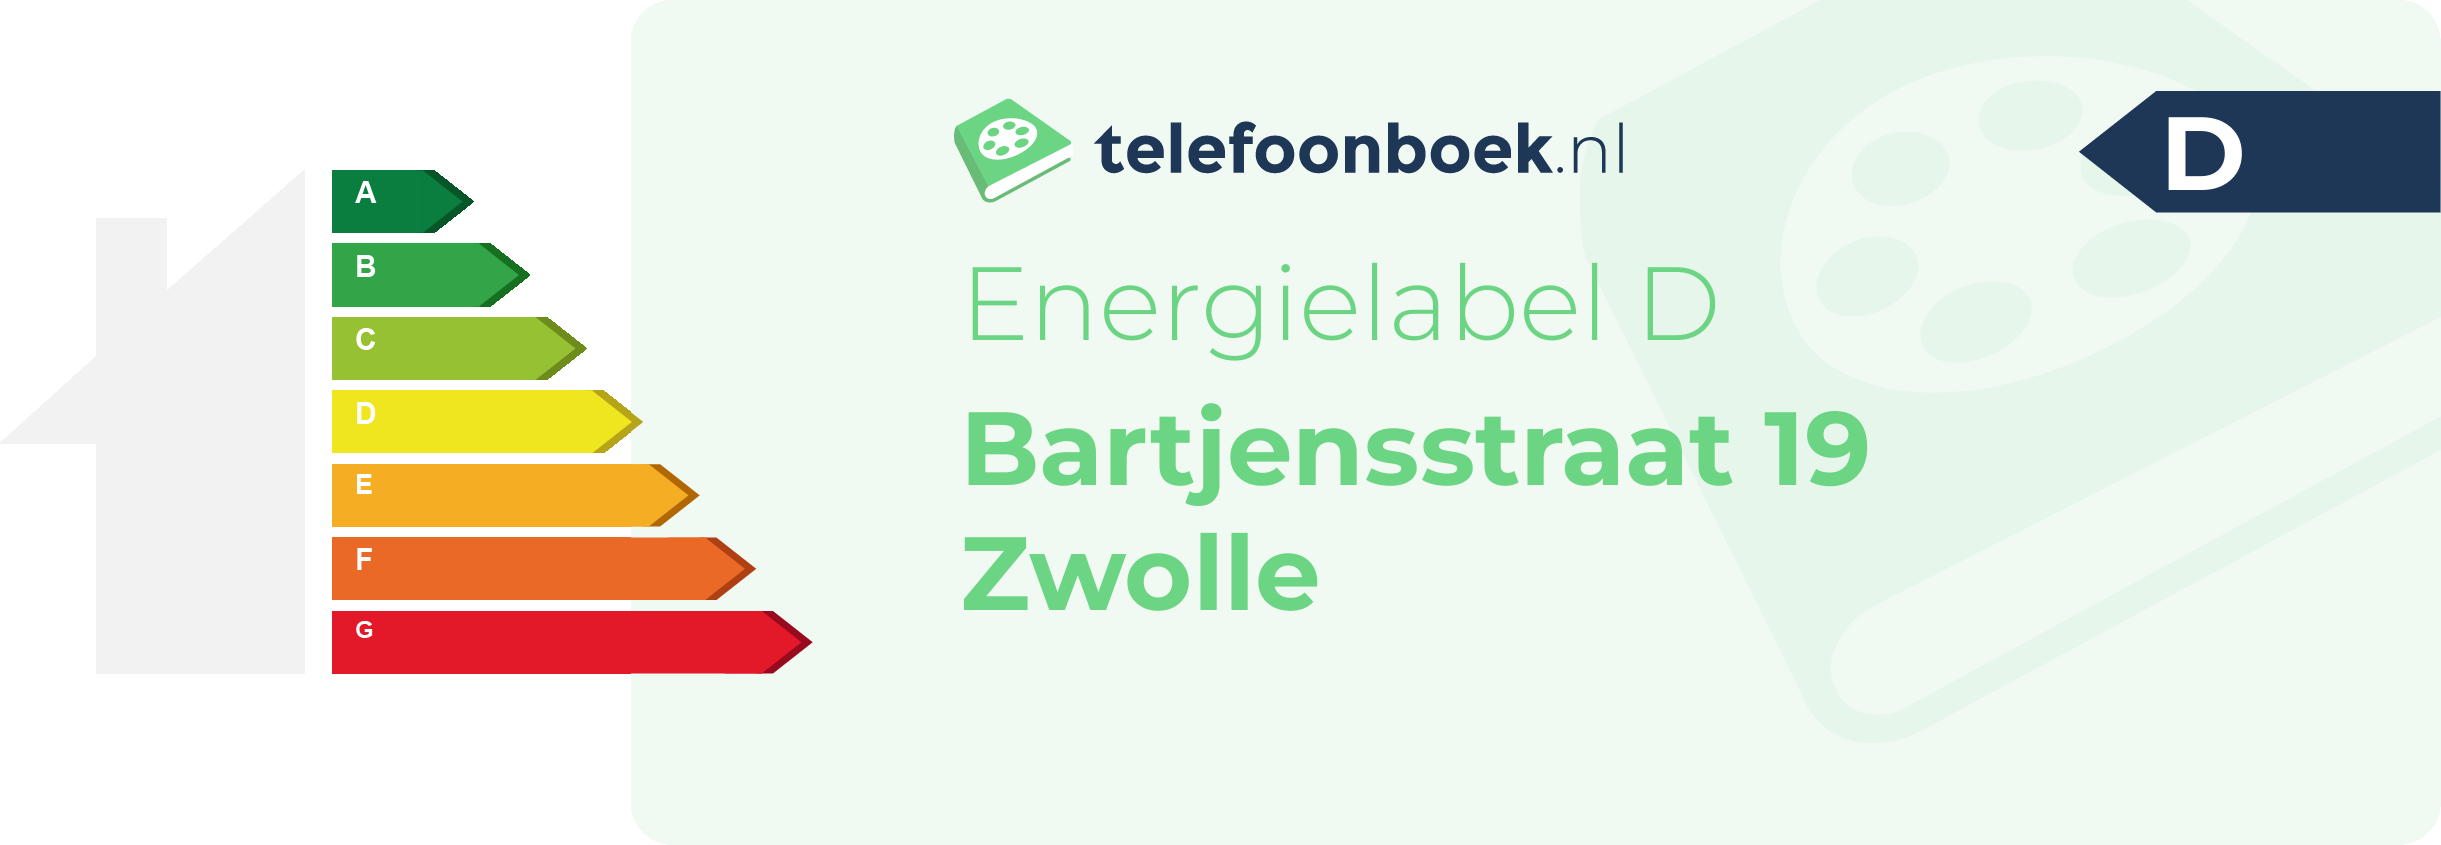 Energielabel Bartjensstraat 19 Zwolle